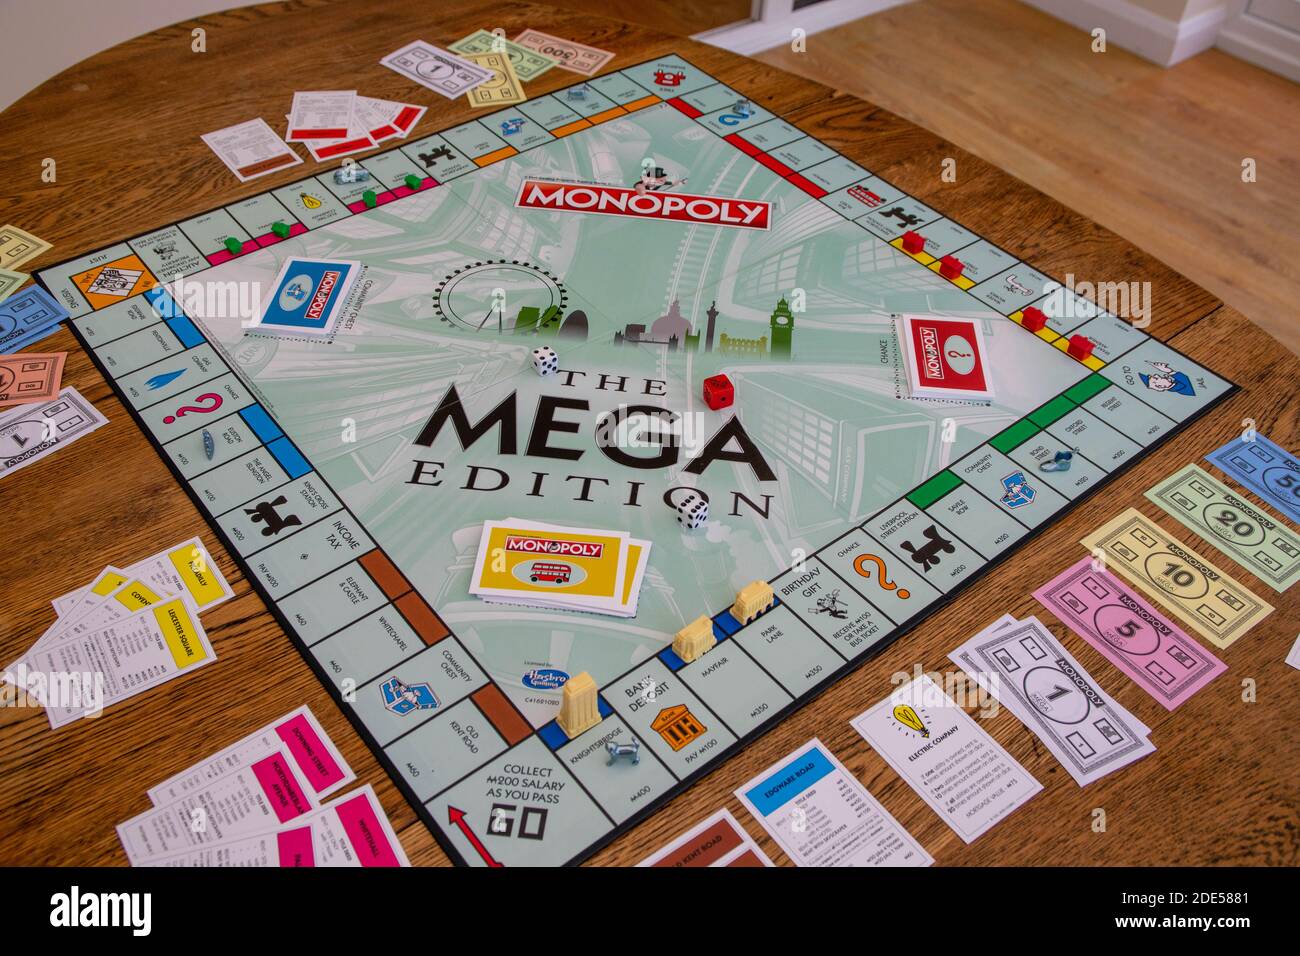 Newley veröffentlichte Mega Edition Monopoly. Neue Version des klassischen, schnell handelnden Brettspiels für Immobilien (Hasbro-Spiele). Finanzen, Banken, richtig kaufen Stockfoto